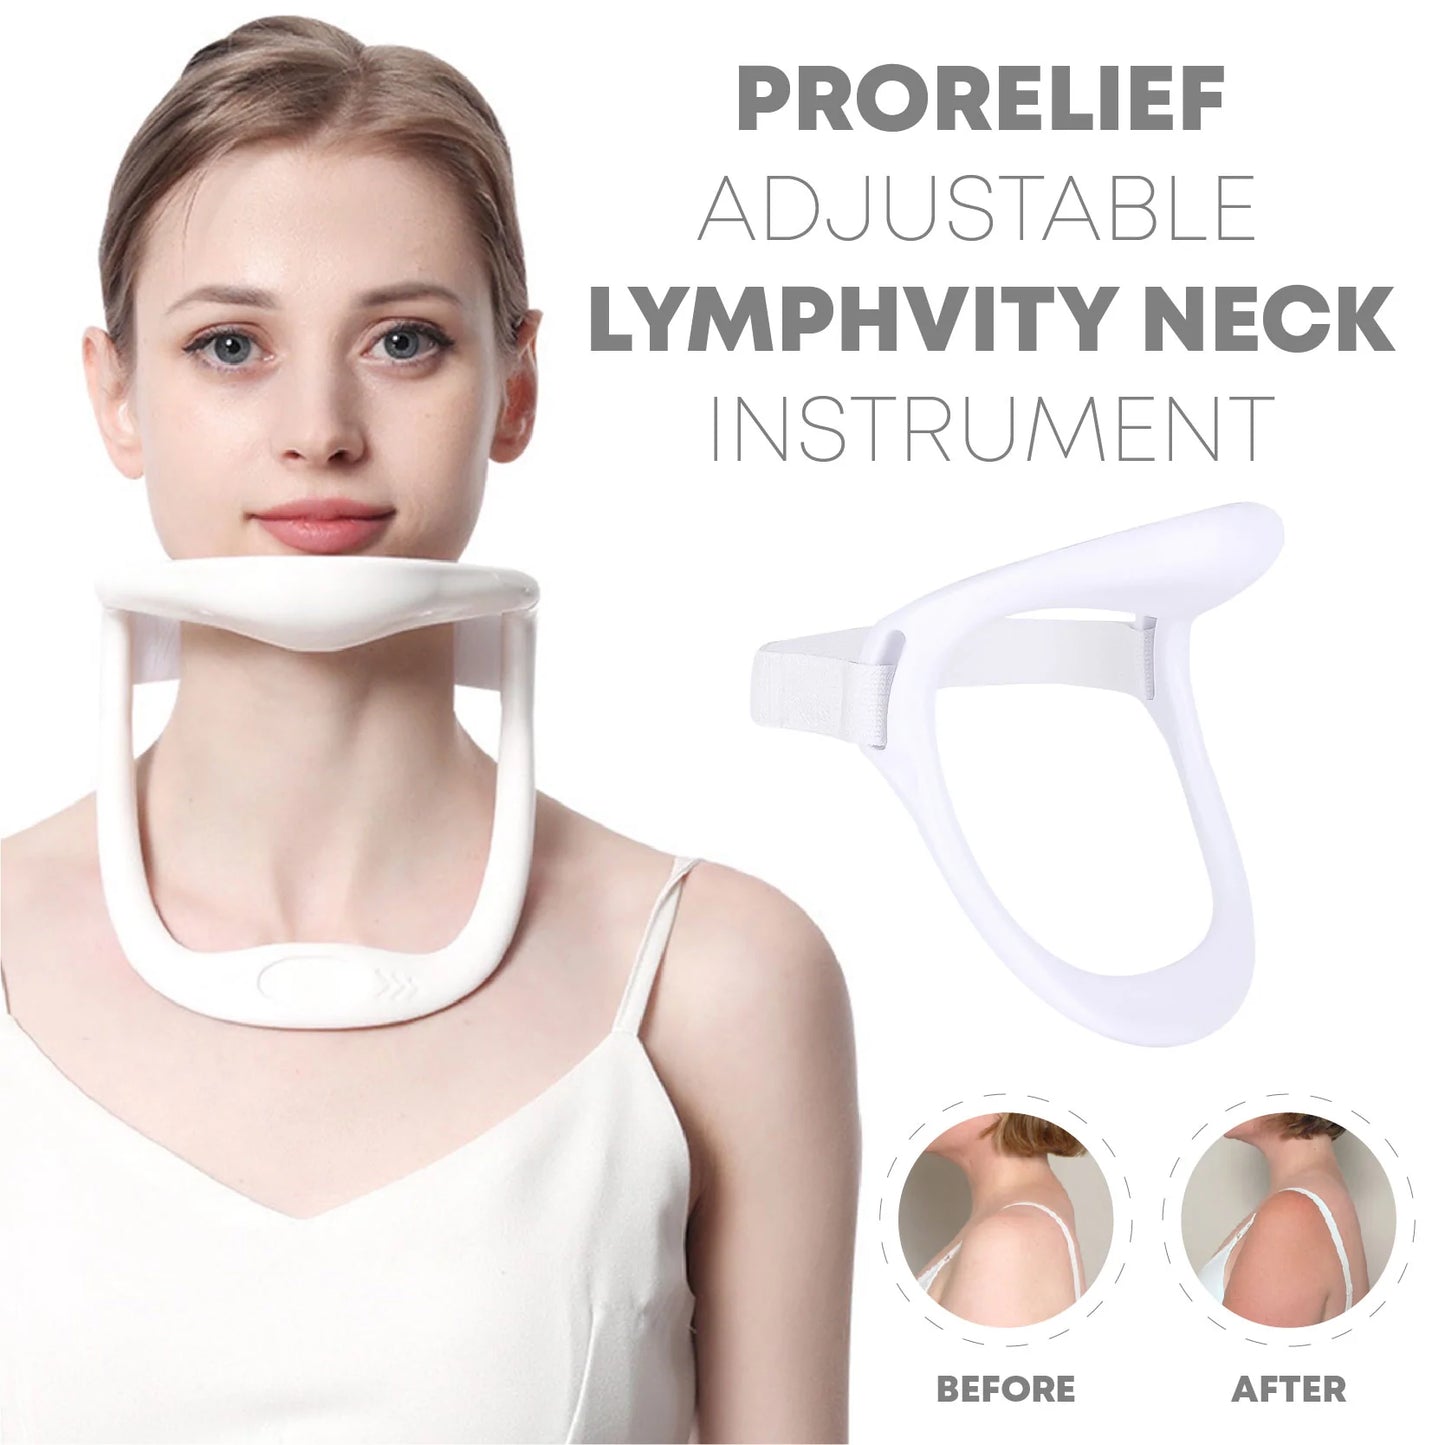 ProRelief Adjustable Lymphvity Neck Instrument